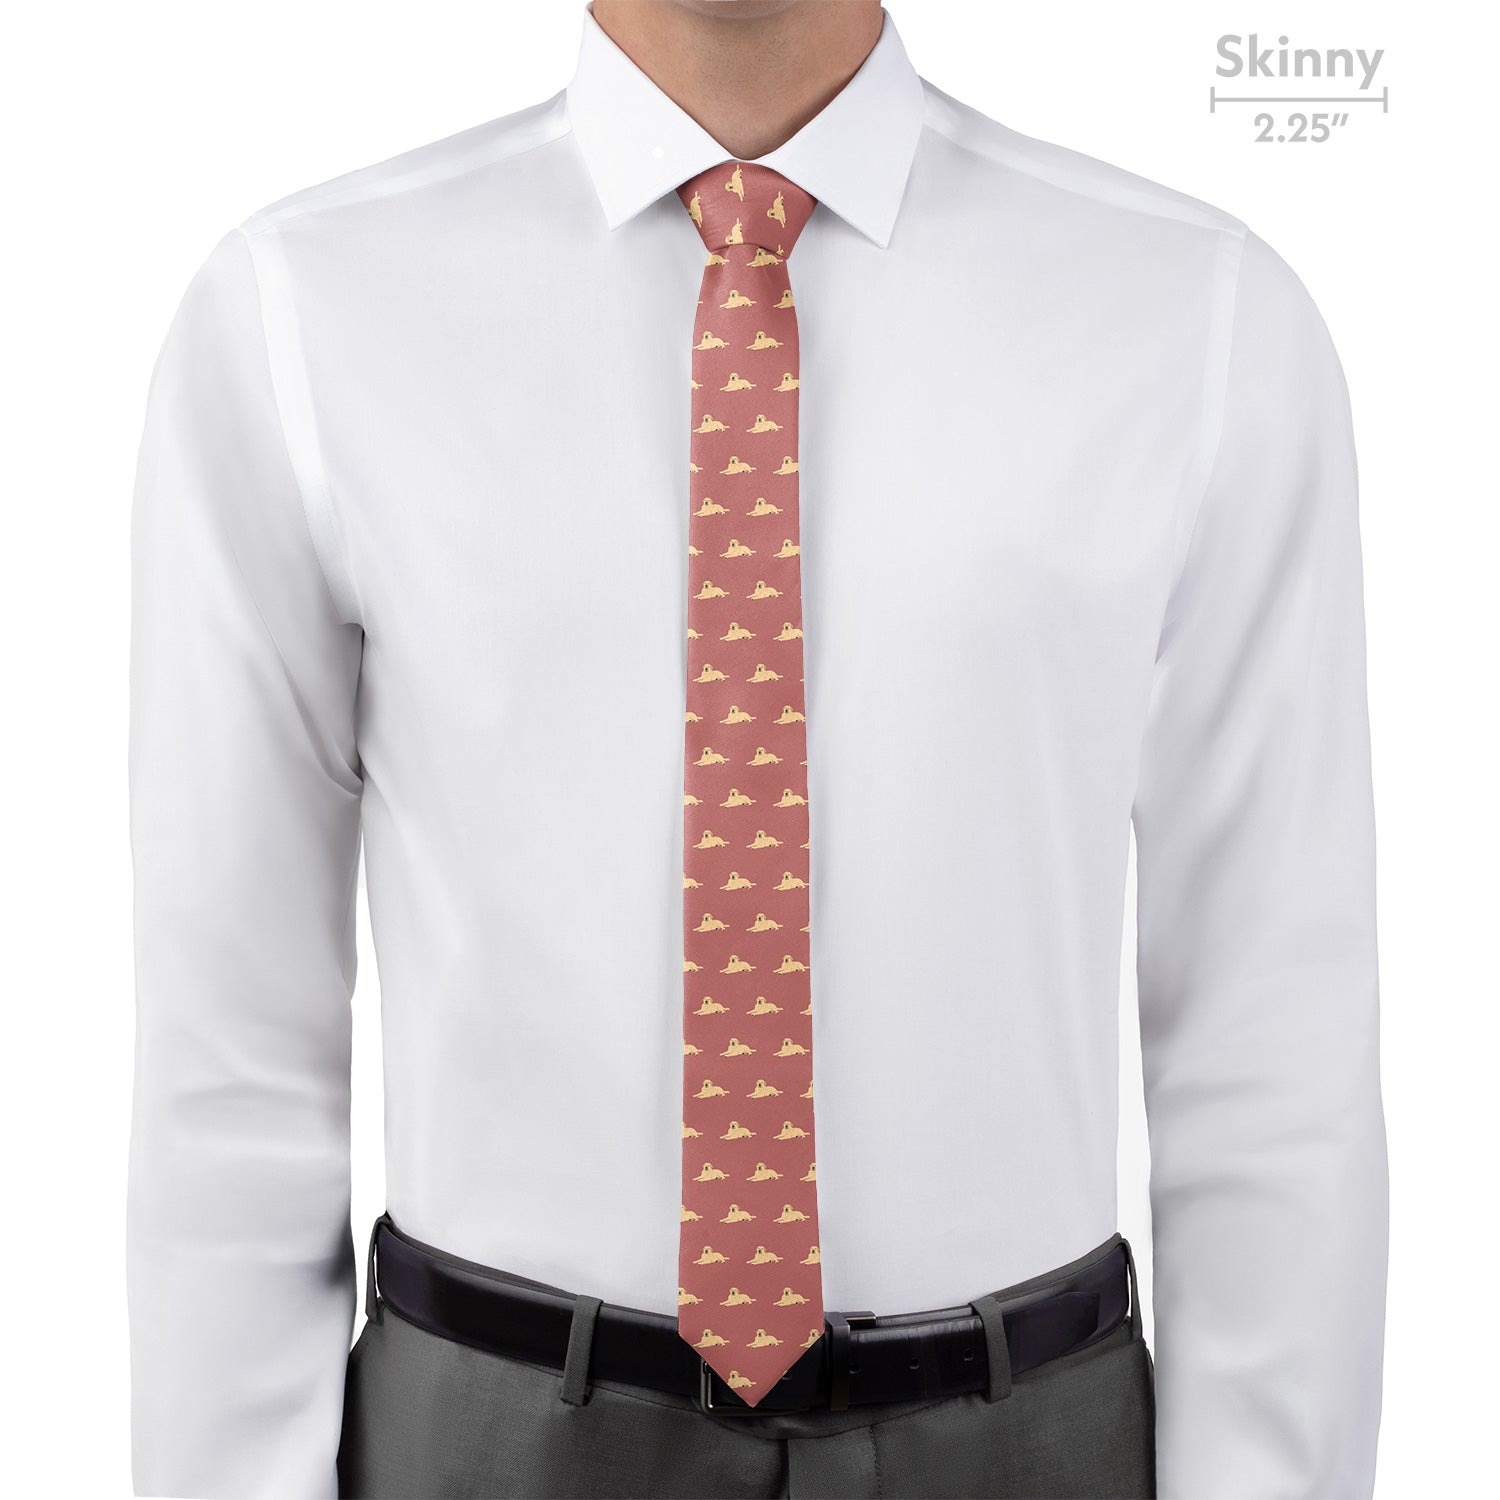 Labrador Retriever Necktie - Skinny - Knotty Tie Co.